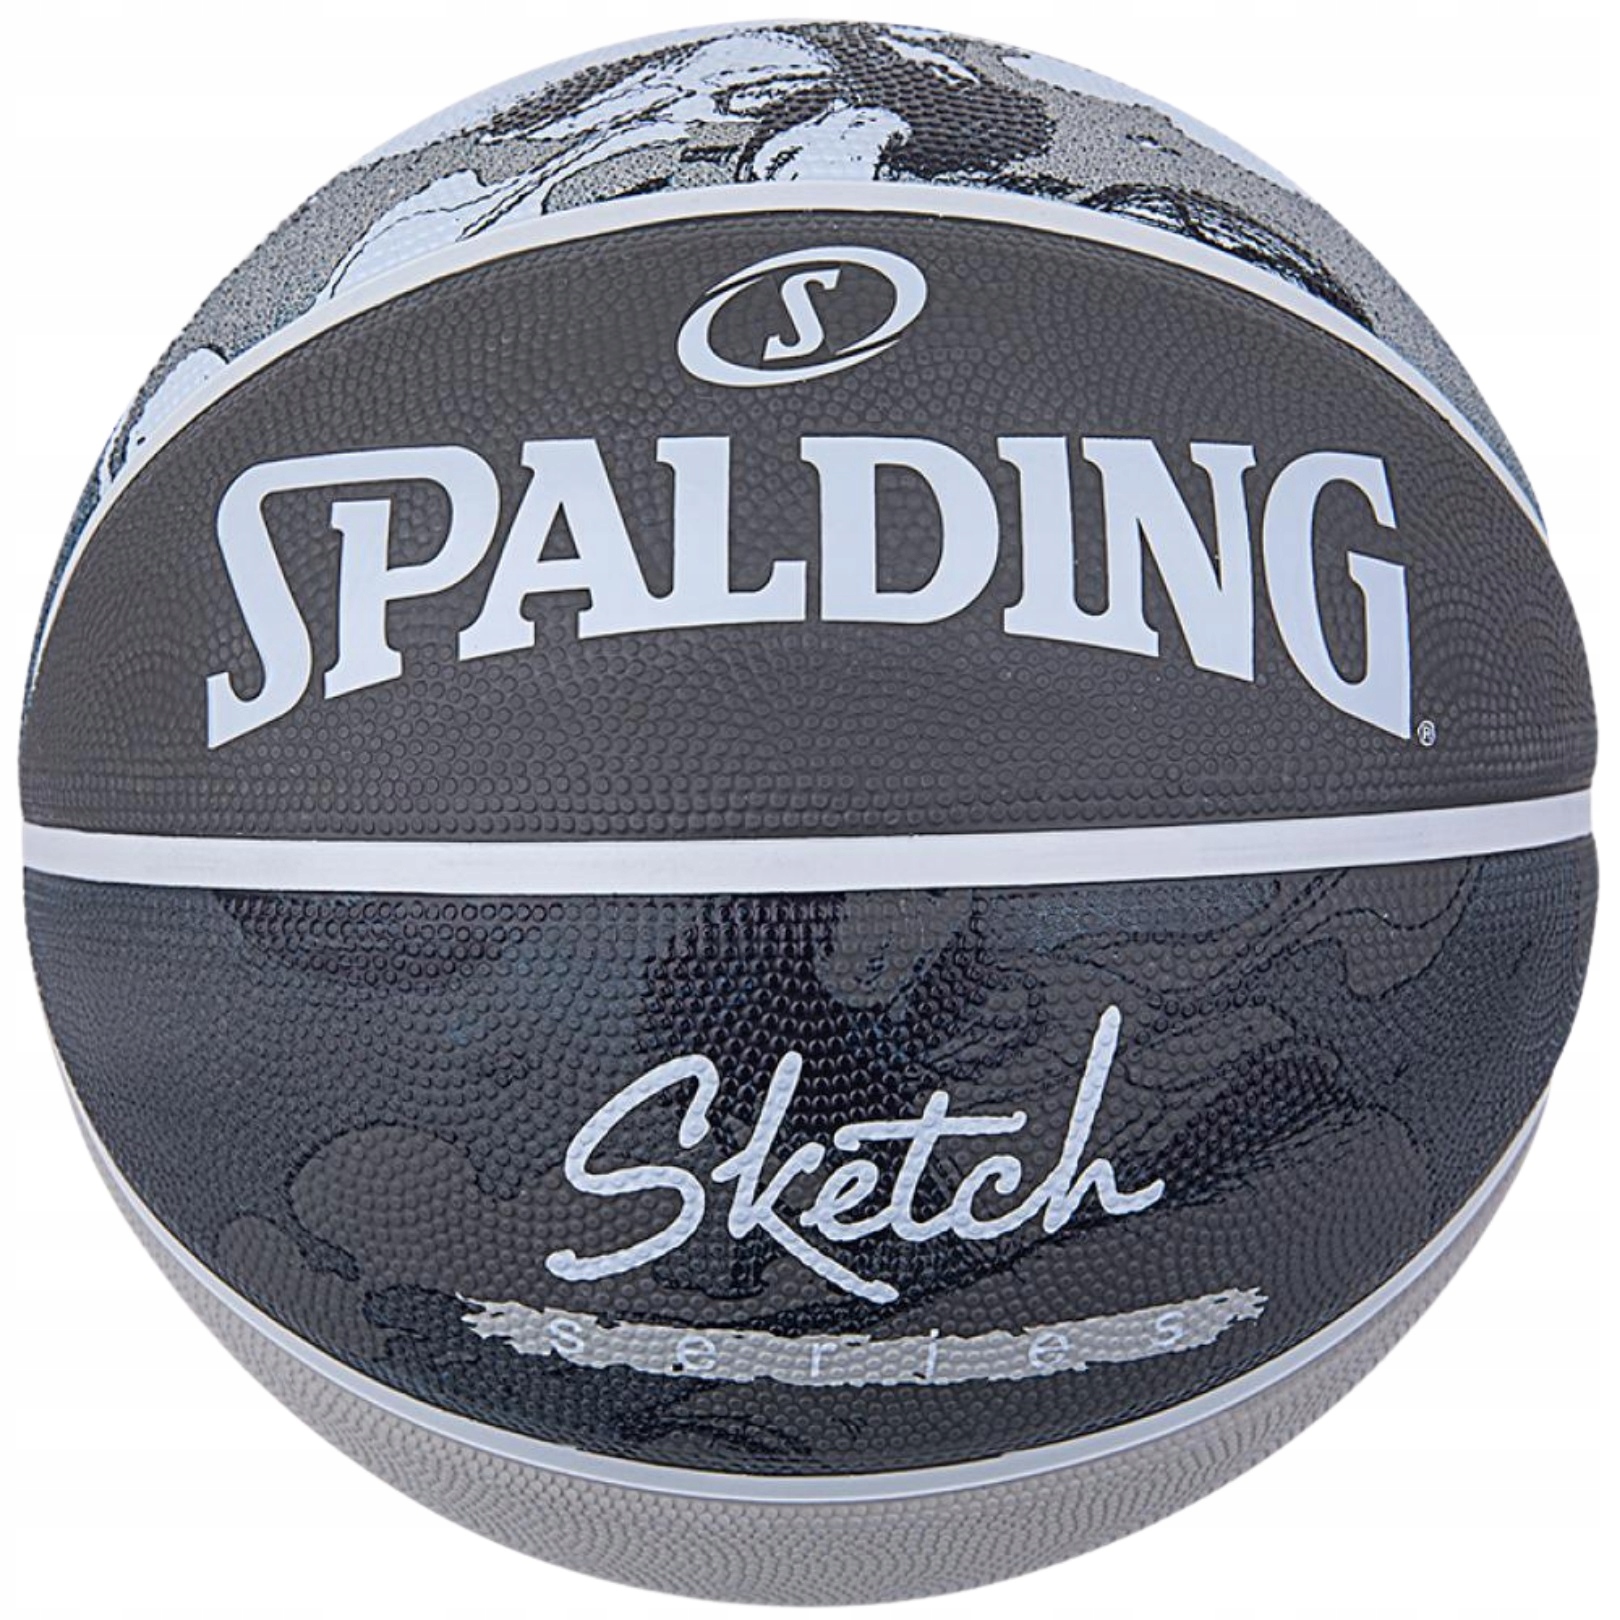 Piłka do koszykówki Spalding Street Sketch r. 7